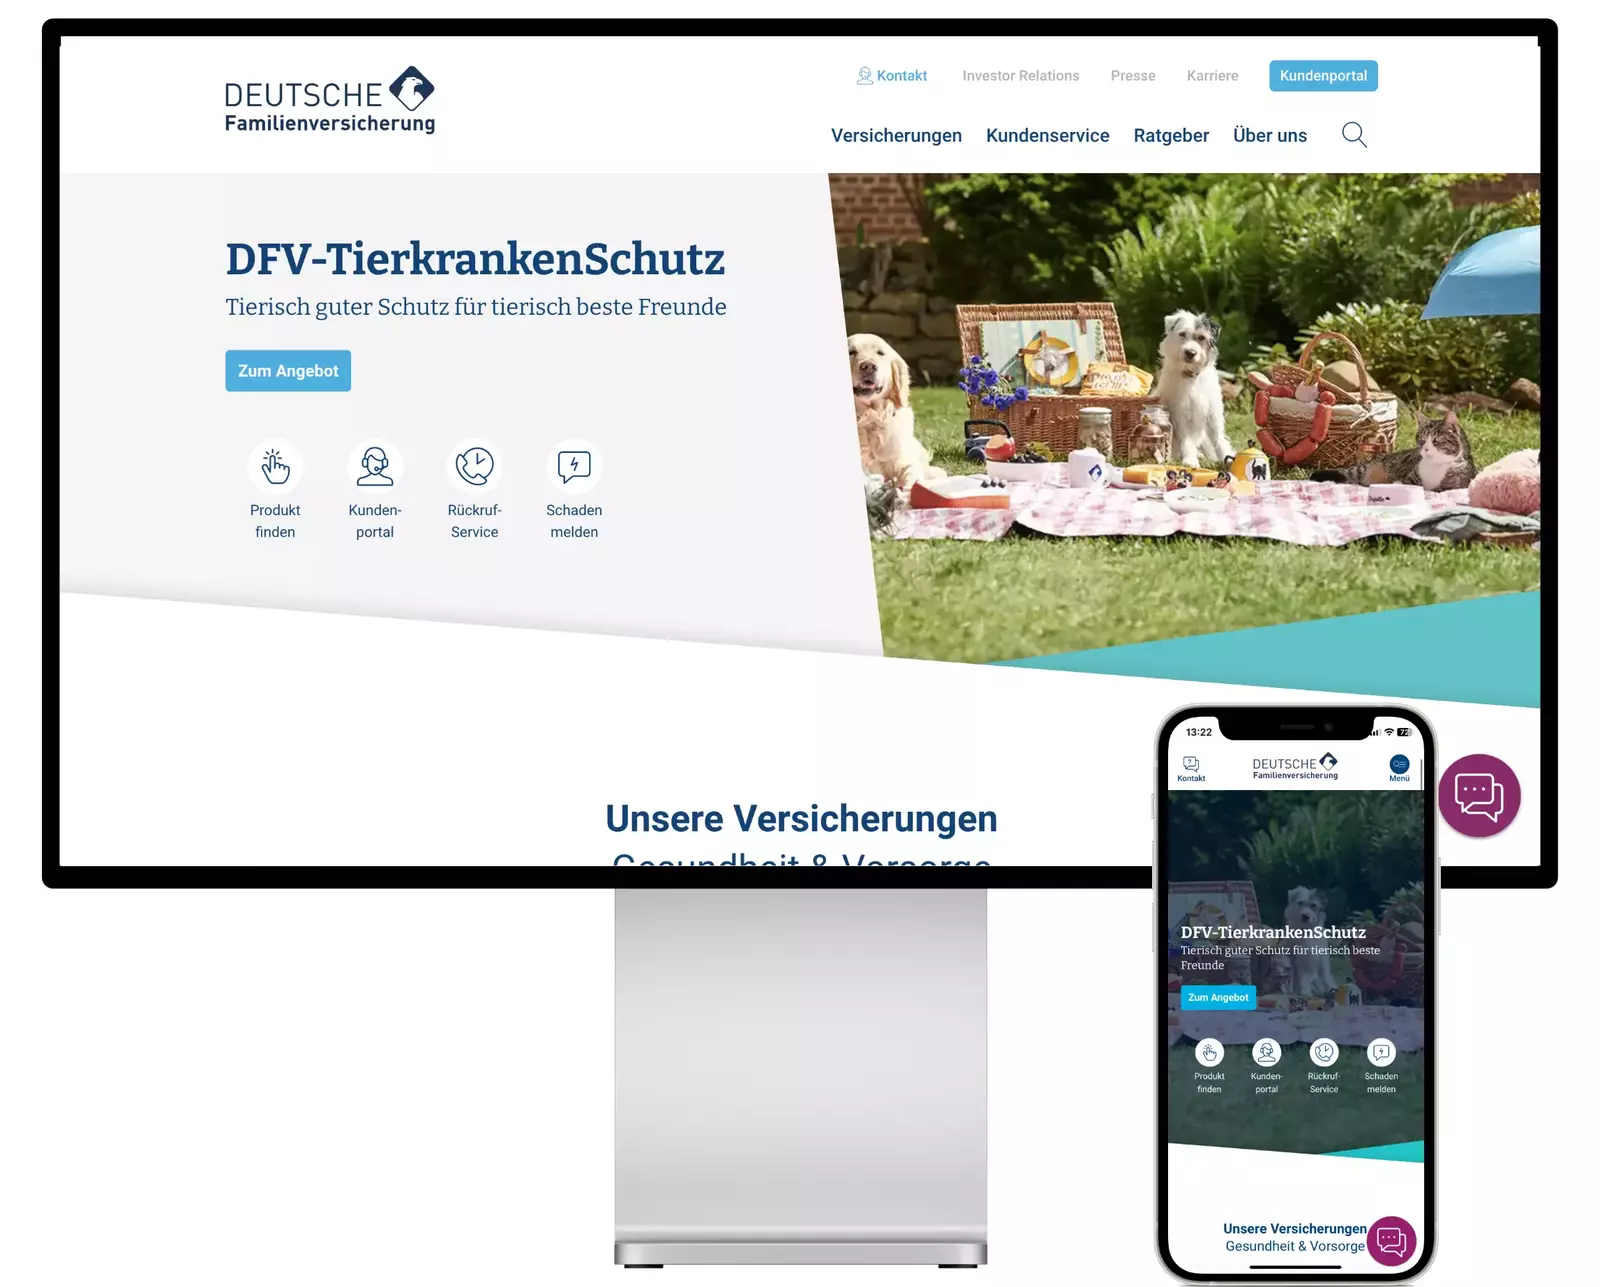 Website of Deutsche Familienversicherung - based on TYPO3